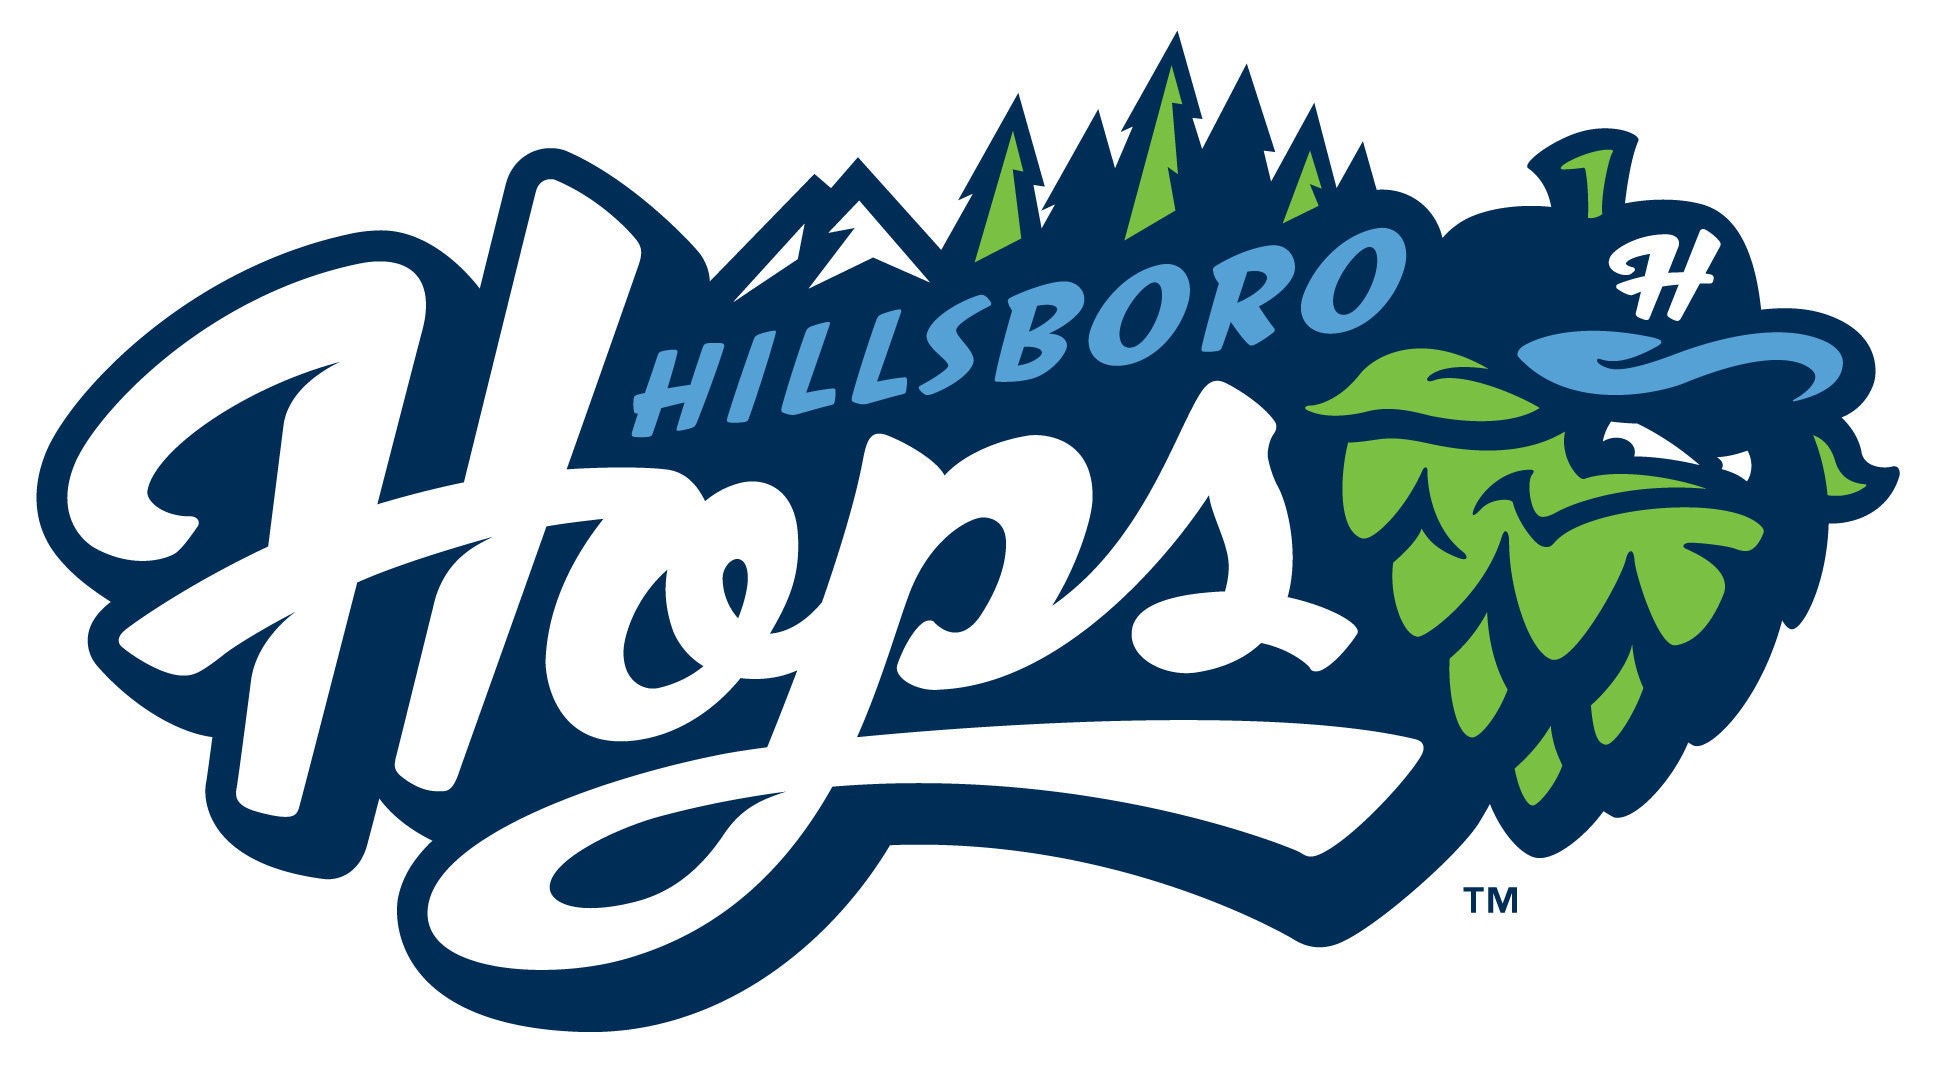 Hillsboro Hops Sports Team alternate logo